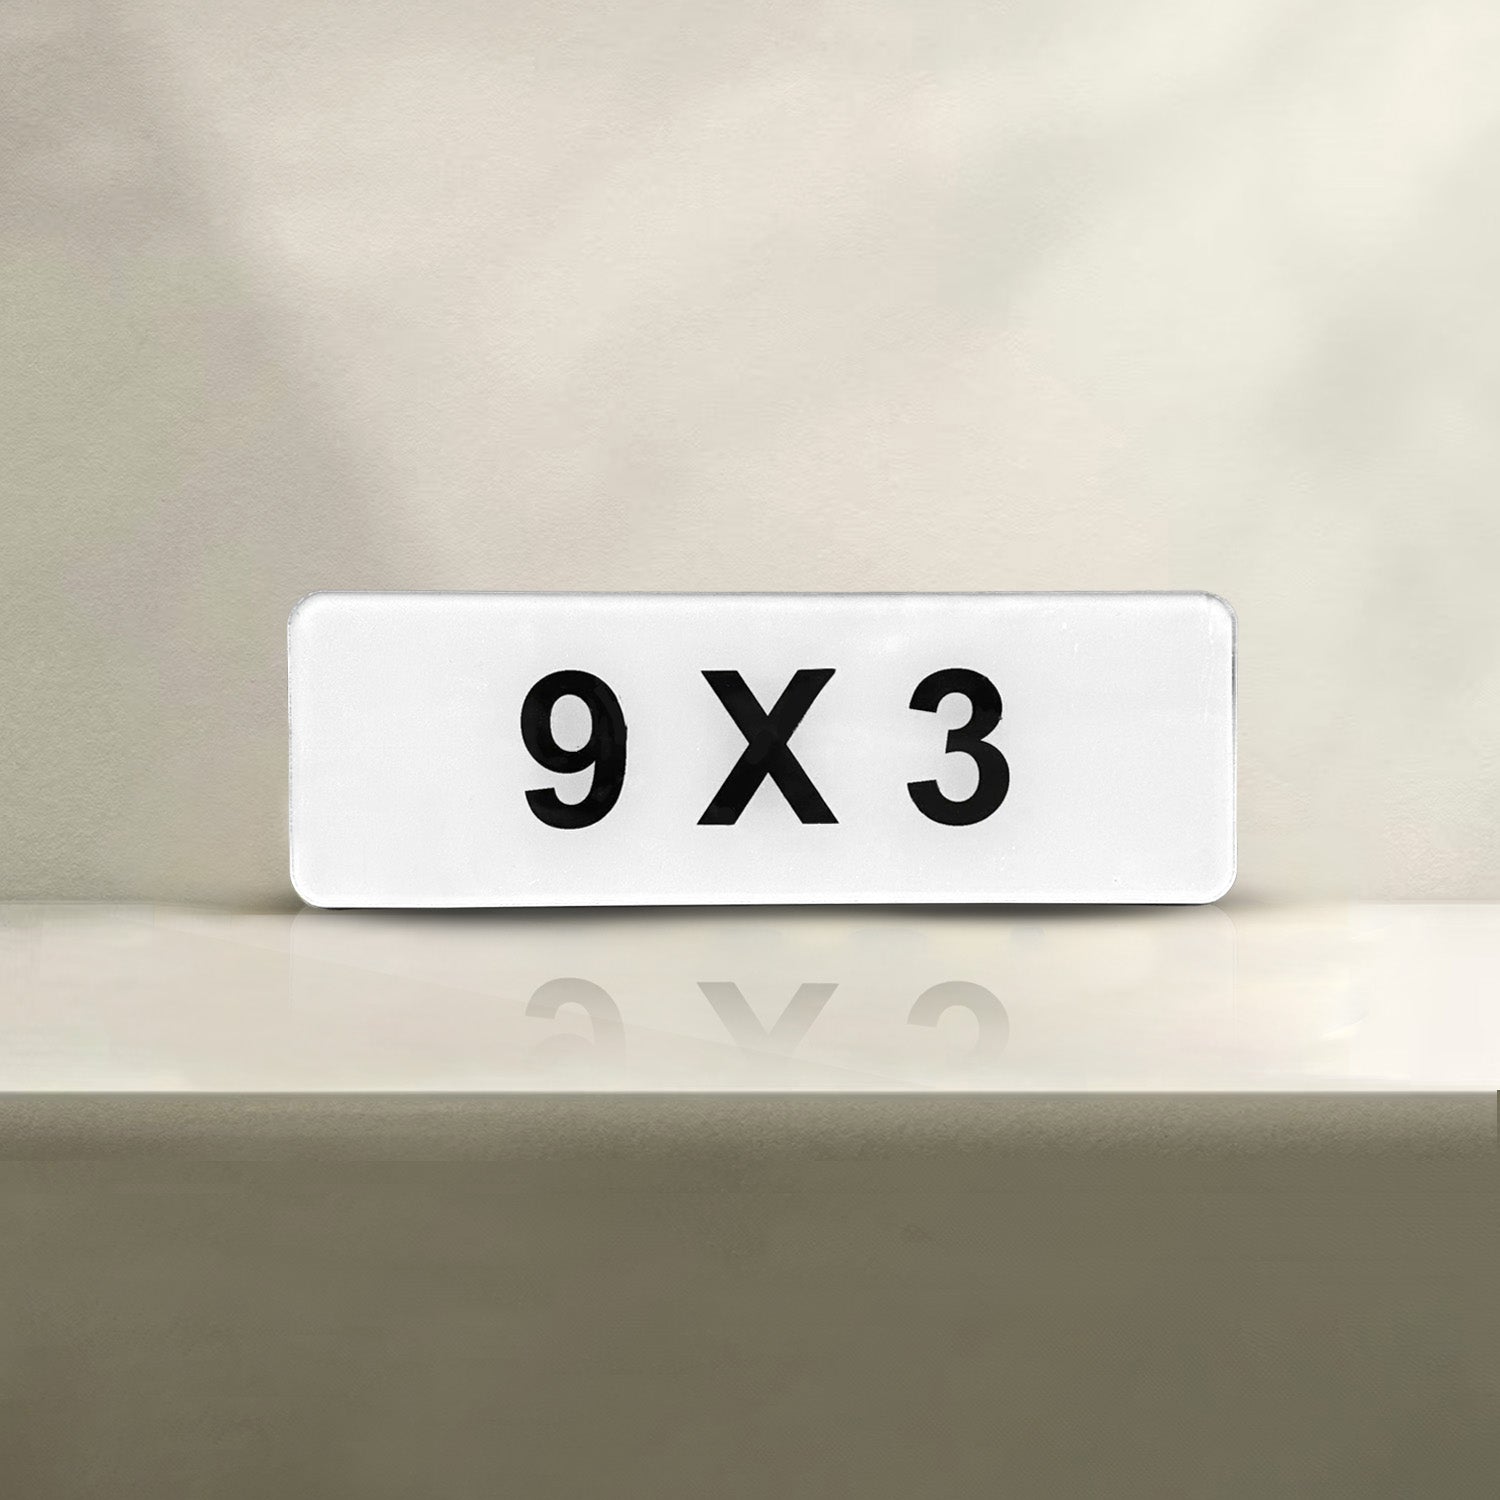 Bike Number Plate (9x3)